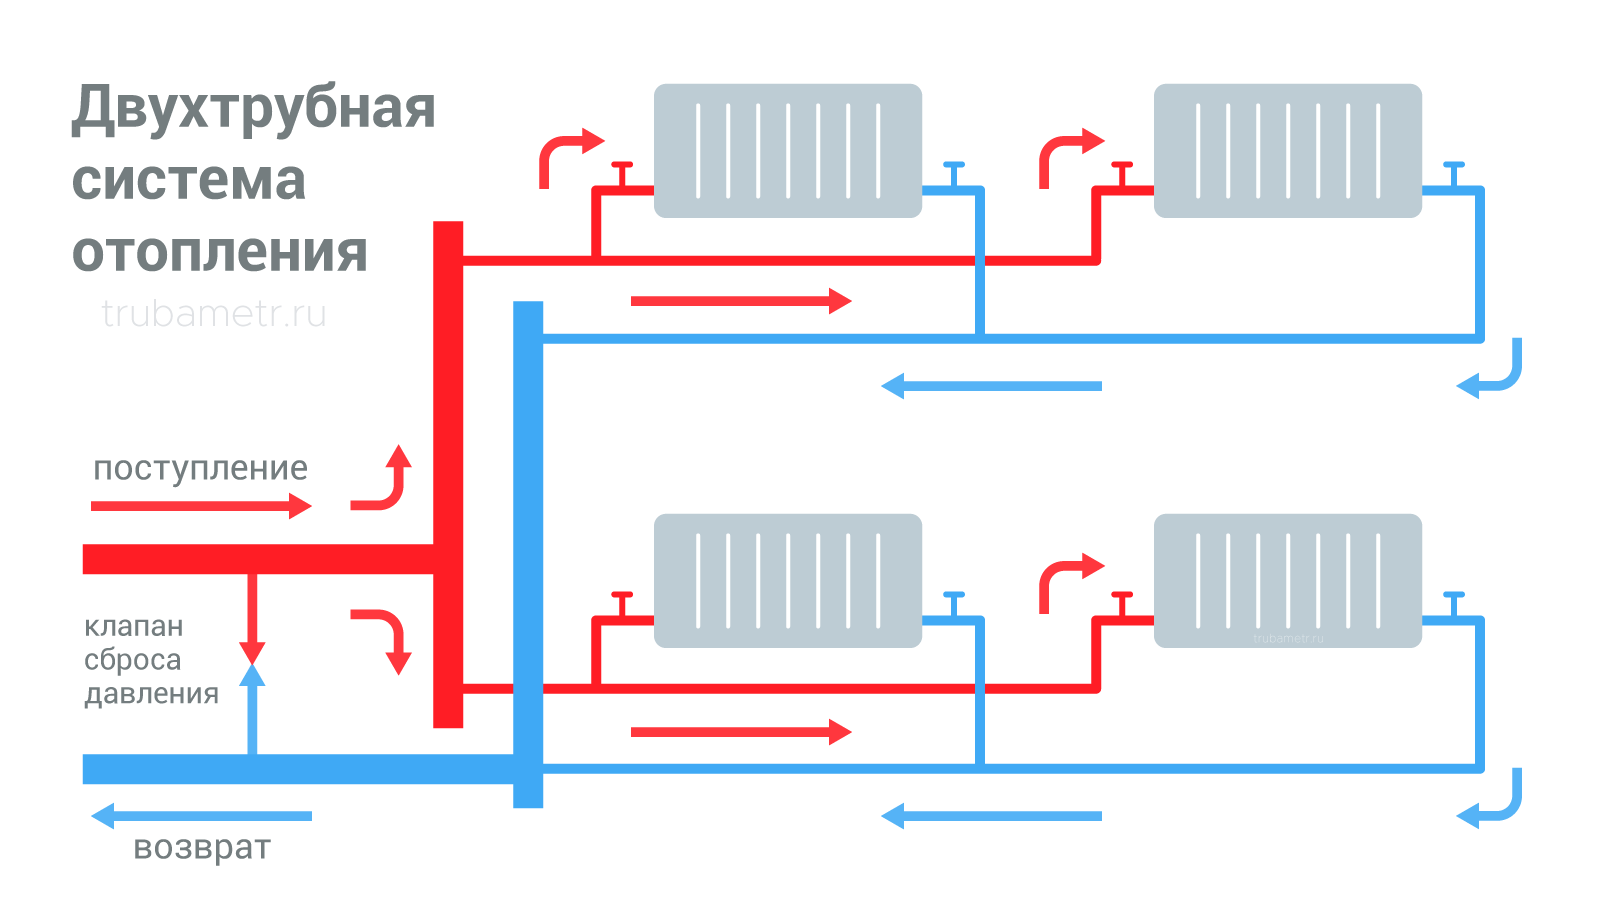 Двухтрубная система водяного отопления